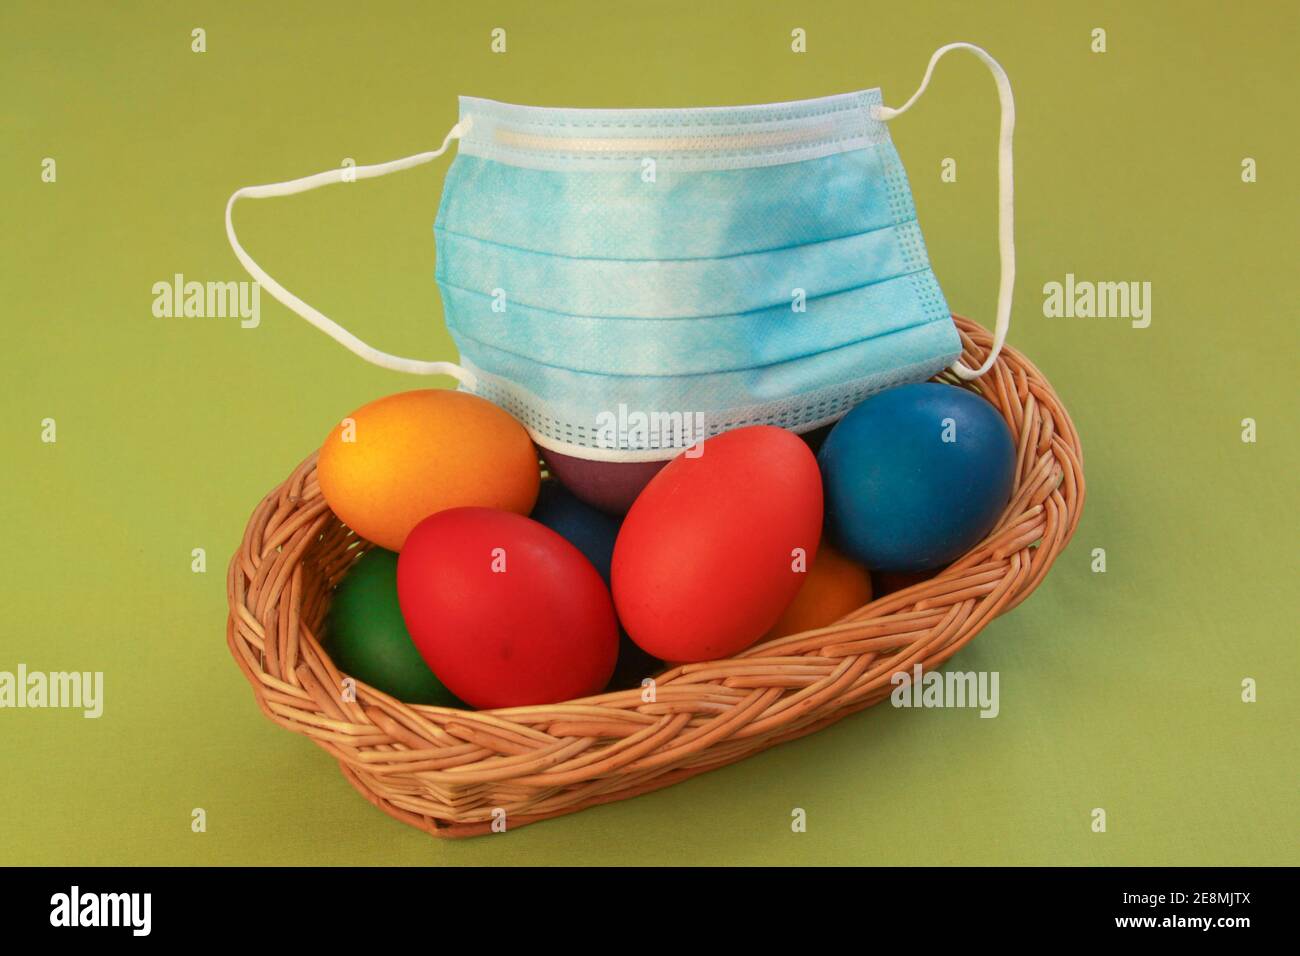 Huevos de Pascua pintados de color aislados en la decoración de la cesta de madera con máscara quirúrgica, un símbolo de la pandemia del coronavirus. Semana Santa 2020 covid 19 brote c Foto de stock